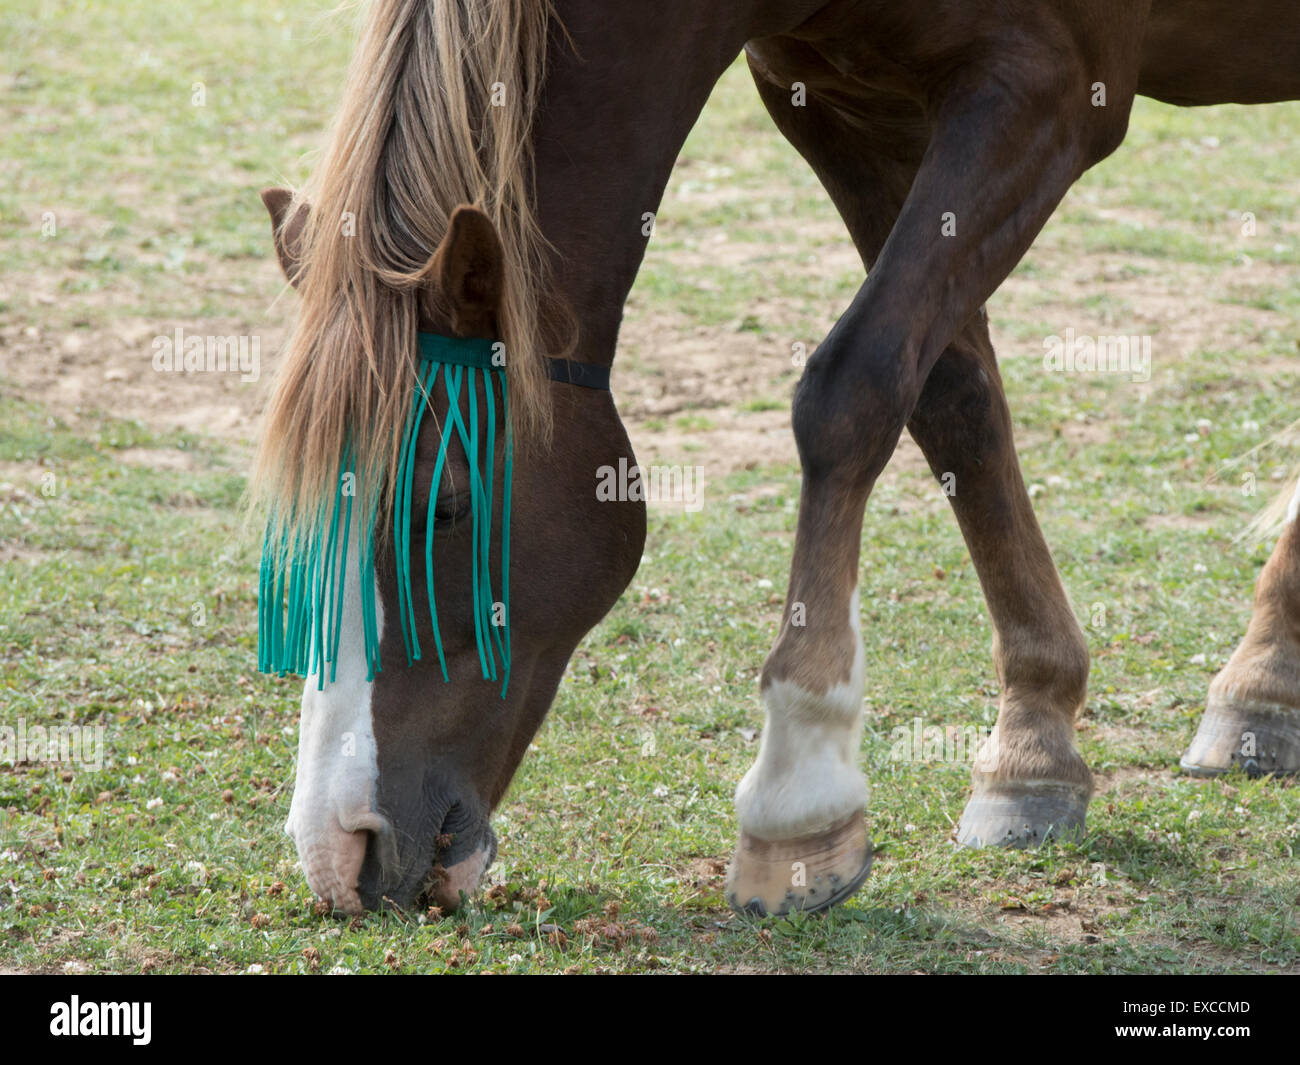 Manger en paix : un cheval avec un fly-net fait paître dans un champ. Banque D'Images